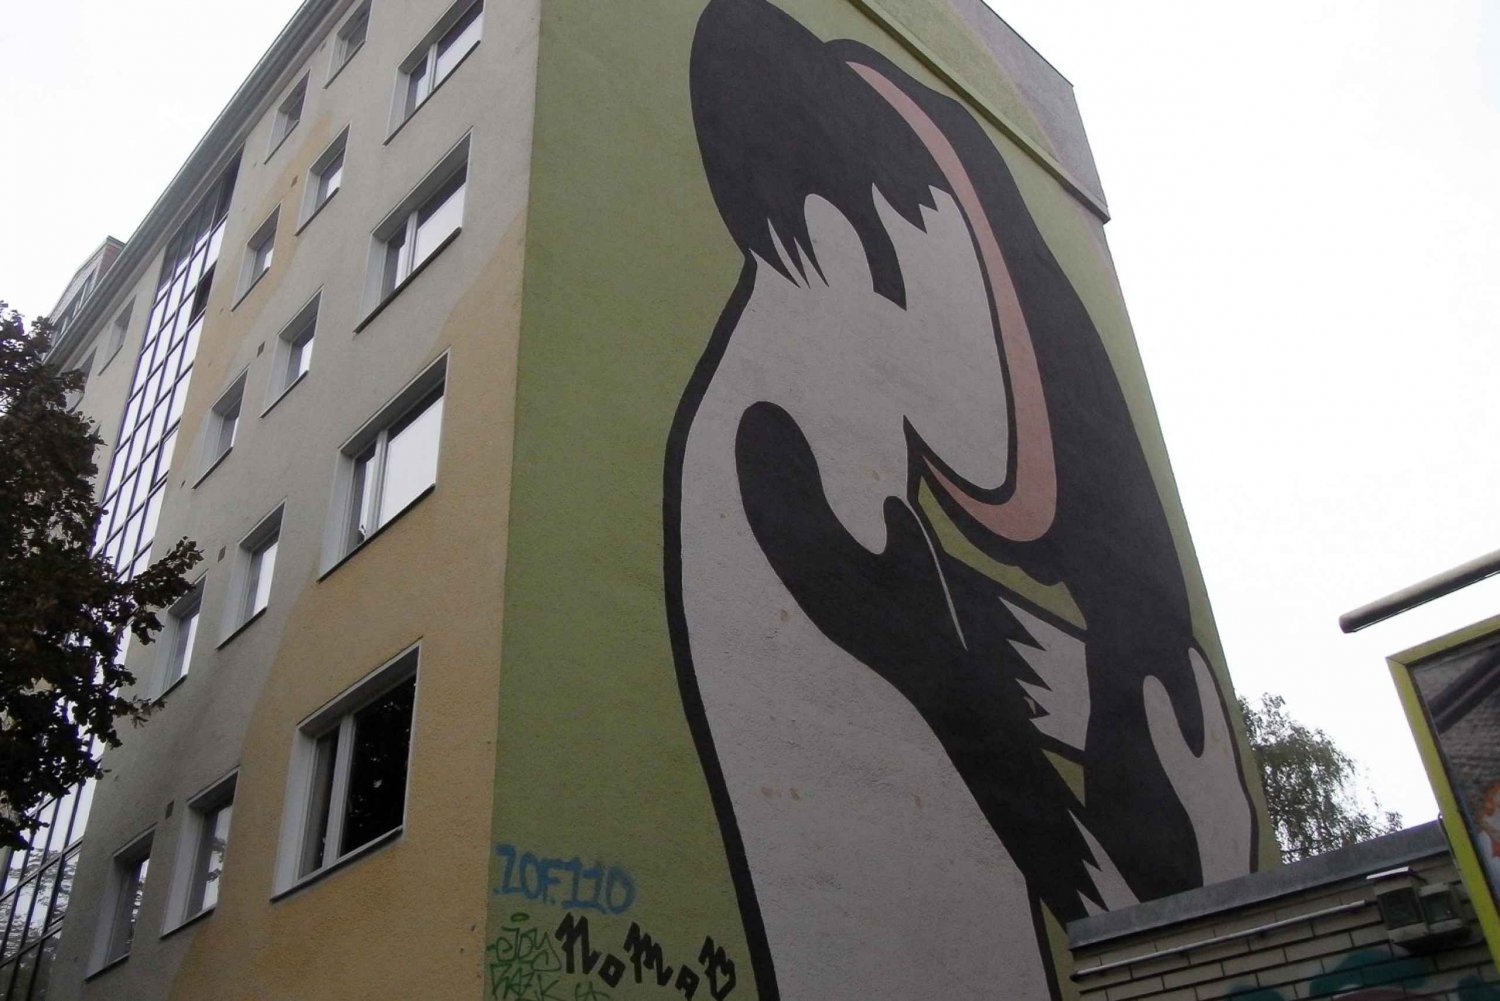 Privat rundtur Alternativa Berlin - Muralmålningar, graffiti, husockupationer